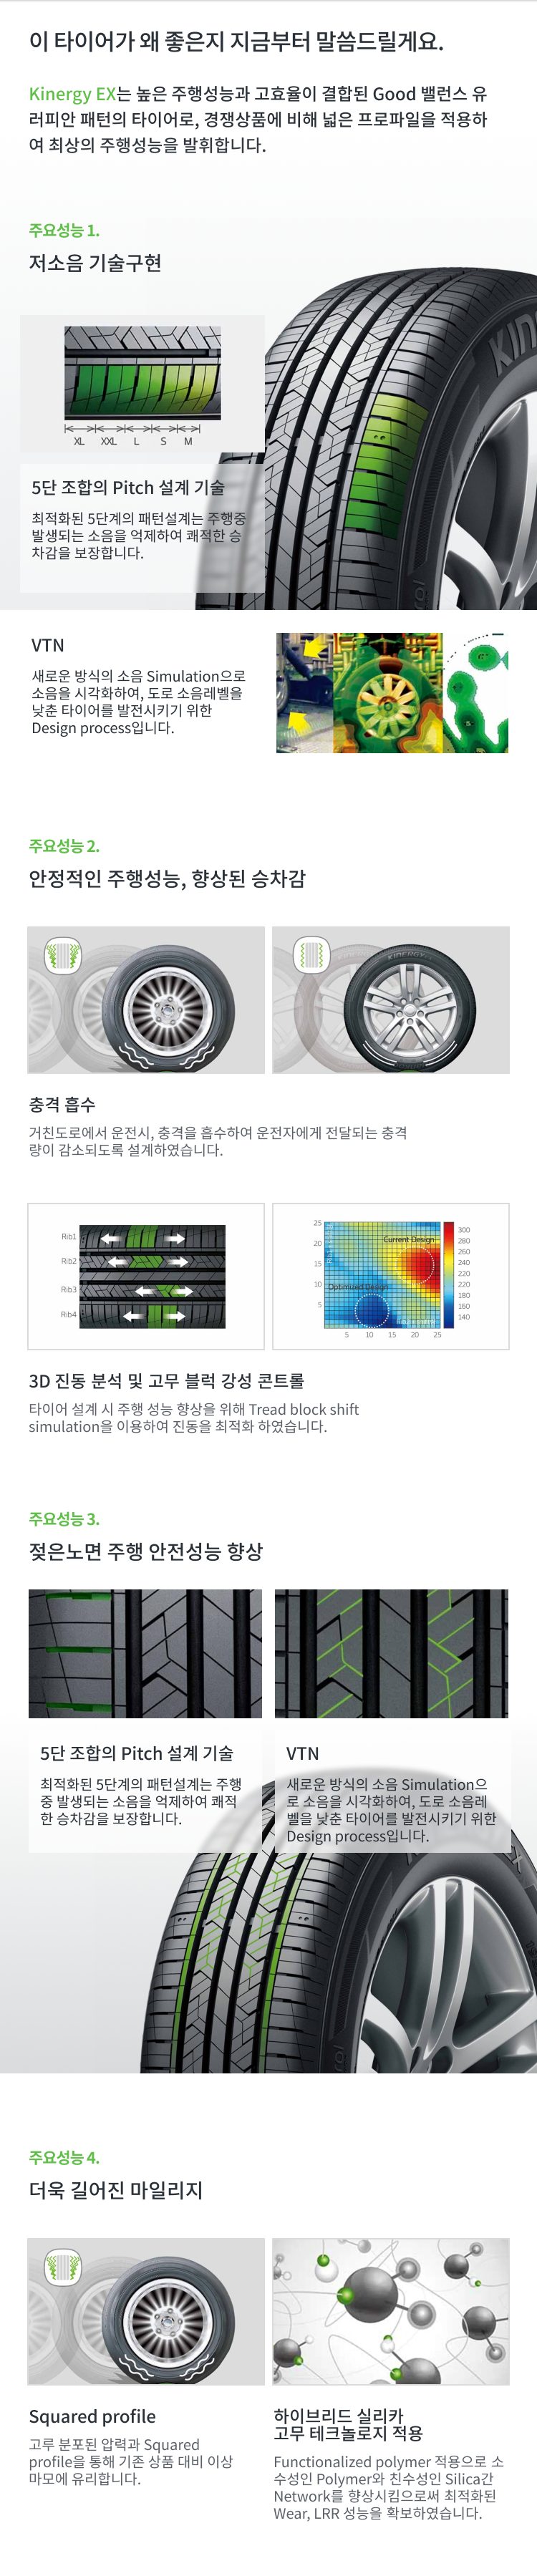 한국타이어 키너지 EX 특장점